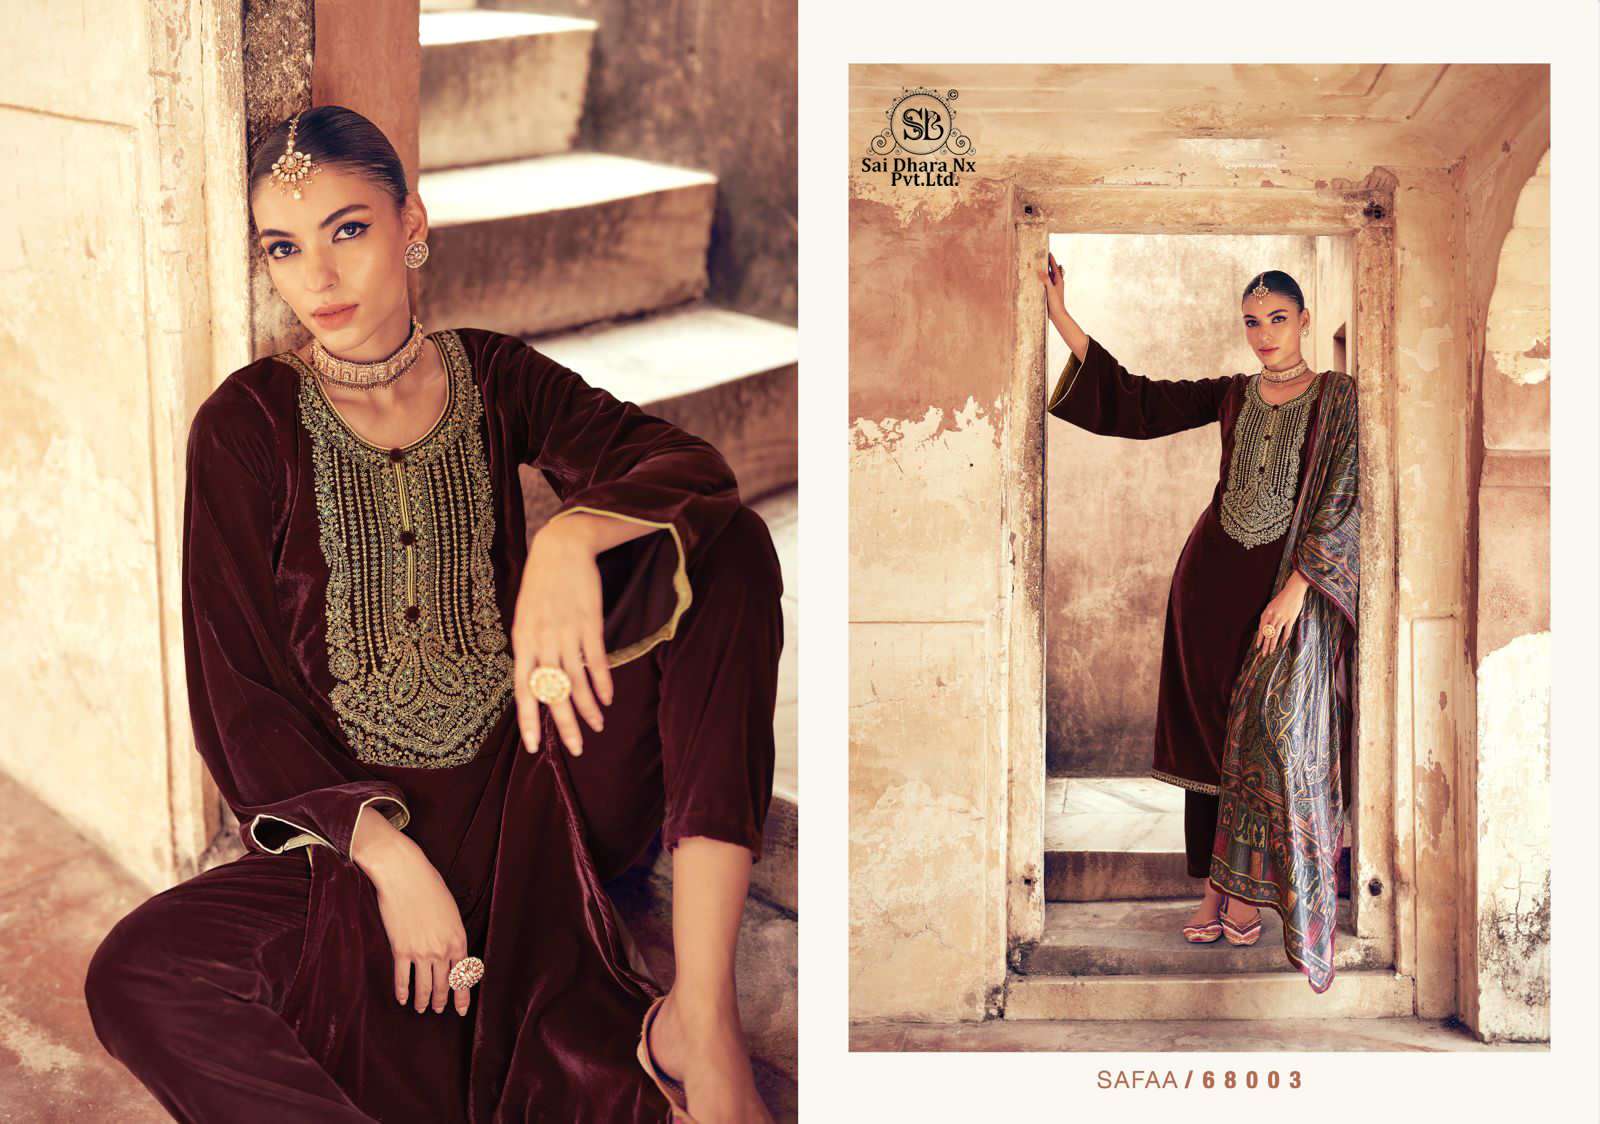 mumtaz arts presents pure velvel dyes 3 piece pakistani suit wholesale shop in surat - SaiDharaNx